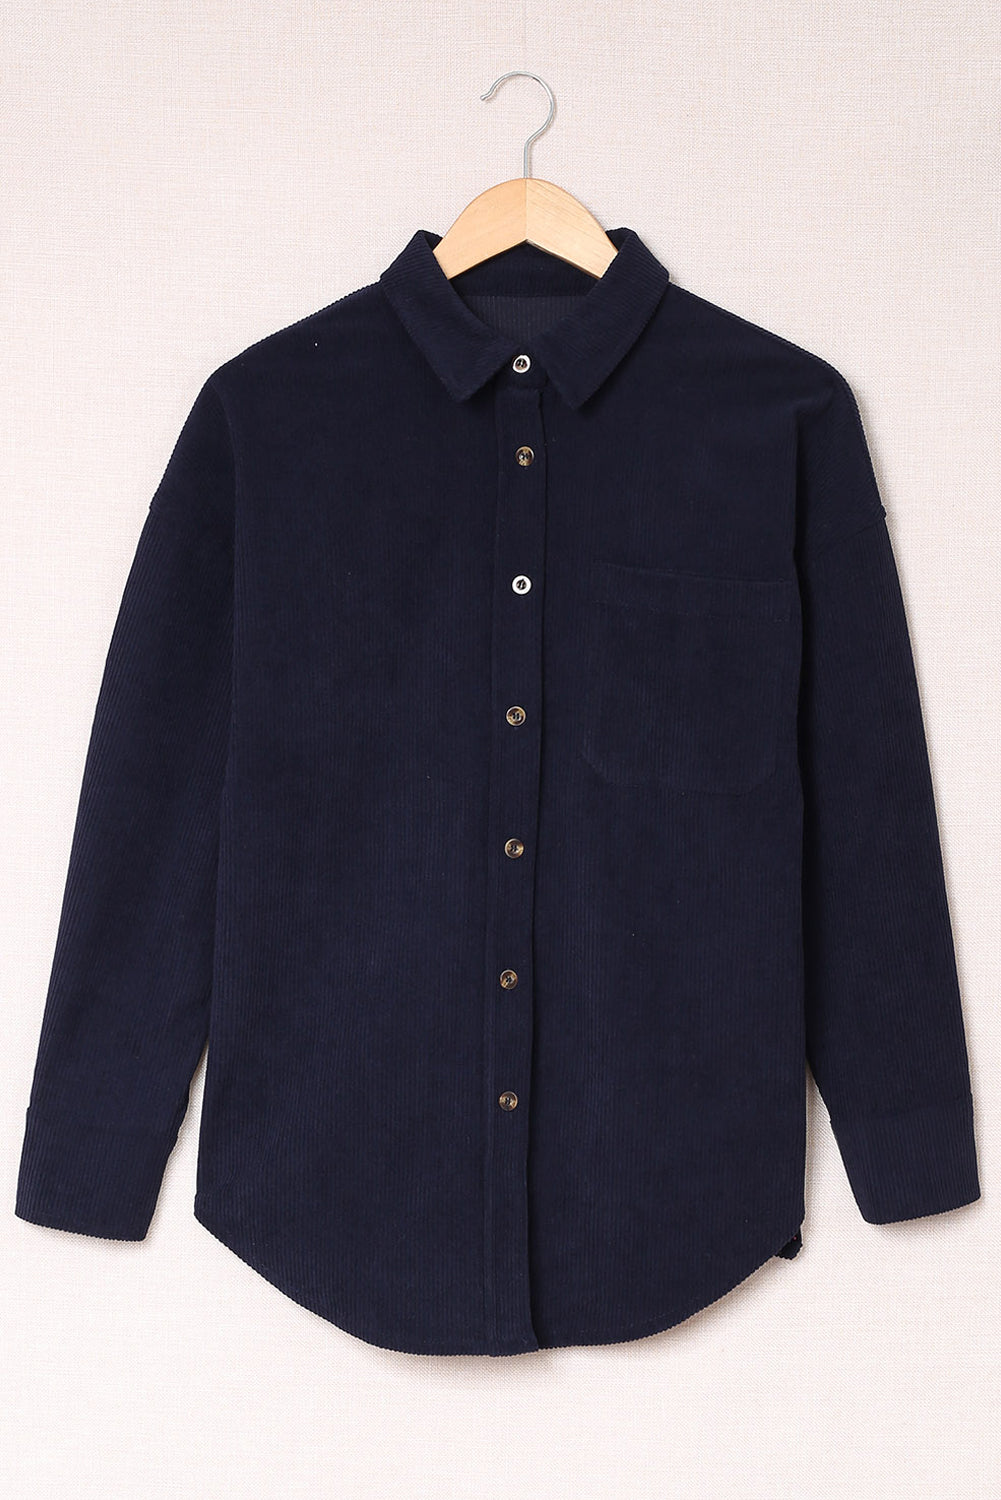 Dark Blue Corduroy Button Pocket Shirt